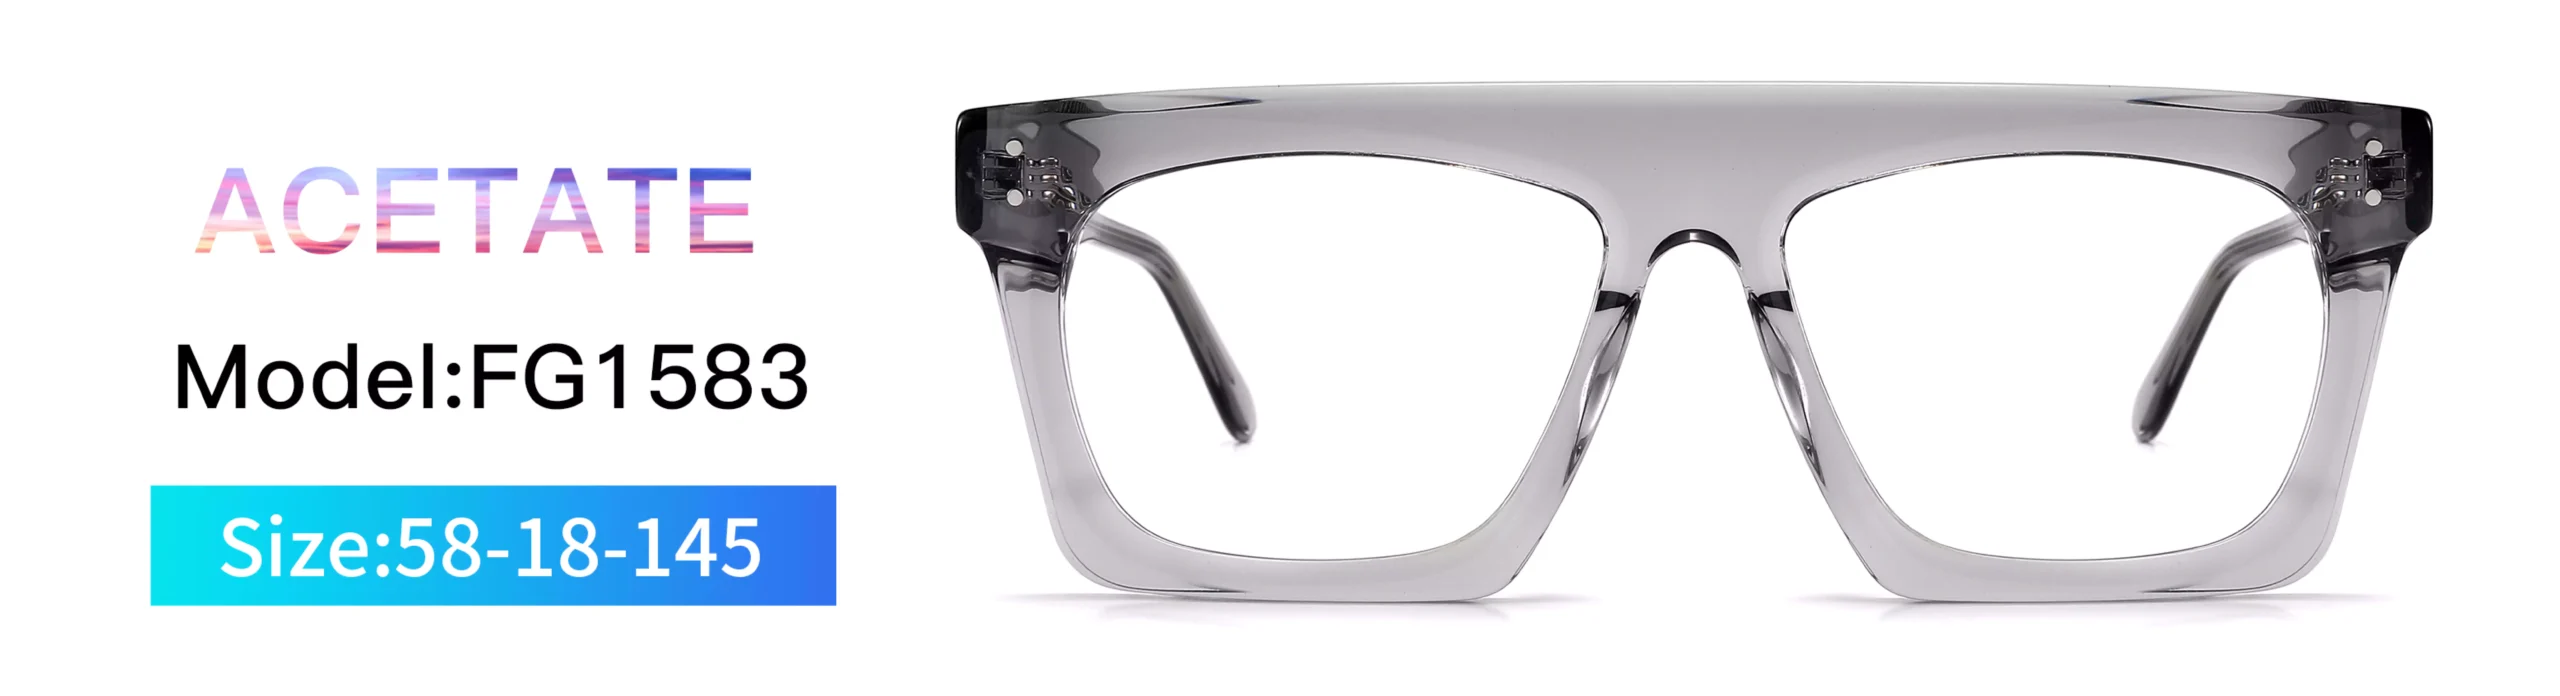 Glasses Frame FG1583, Acetate, Model, Size, Front Display, Square, Transparent Grey